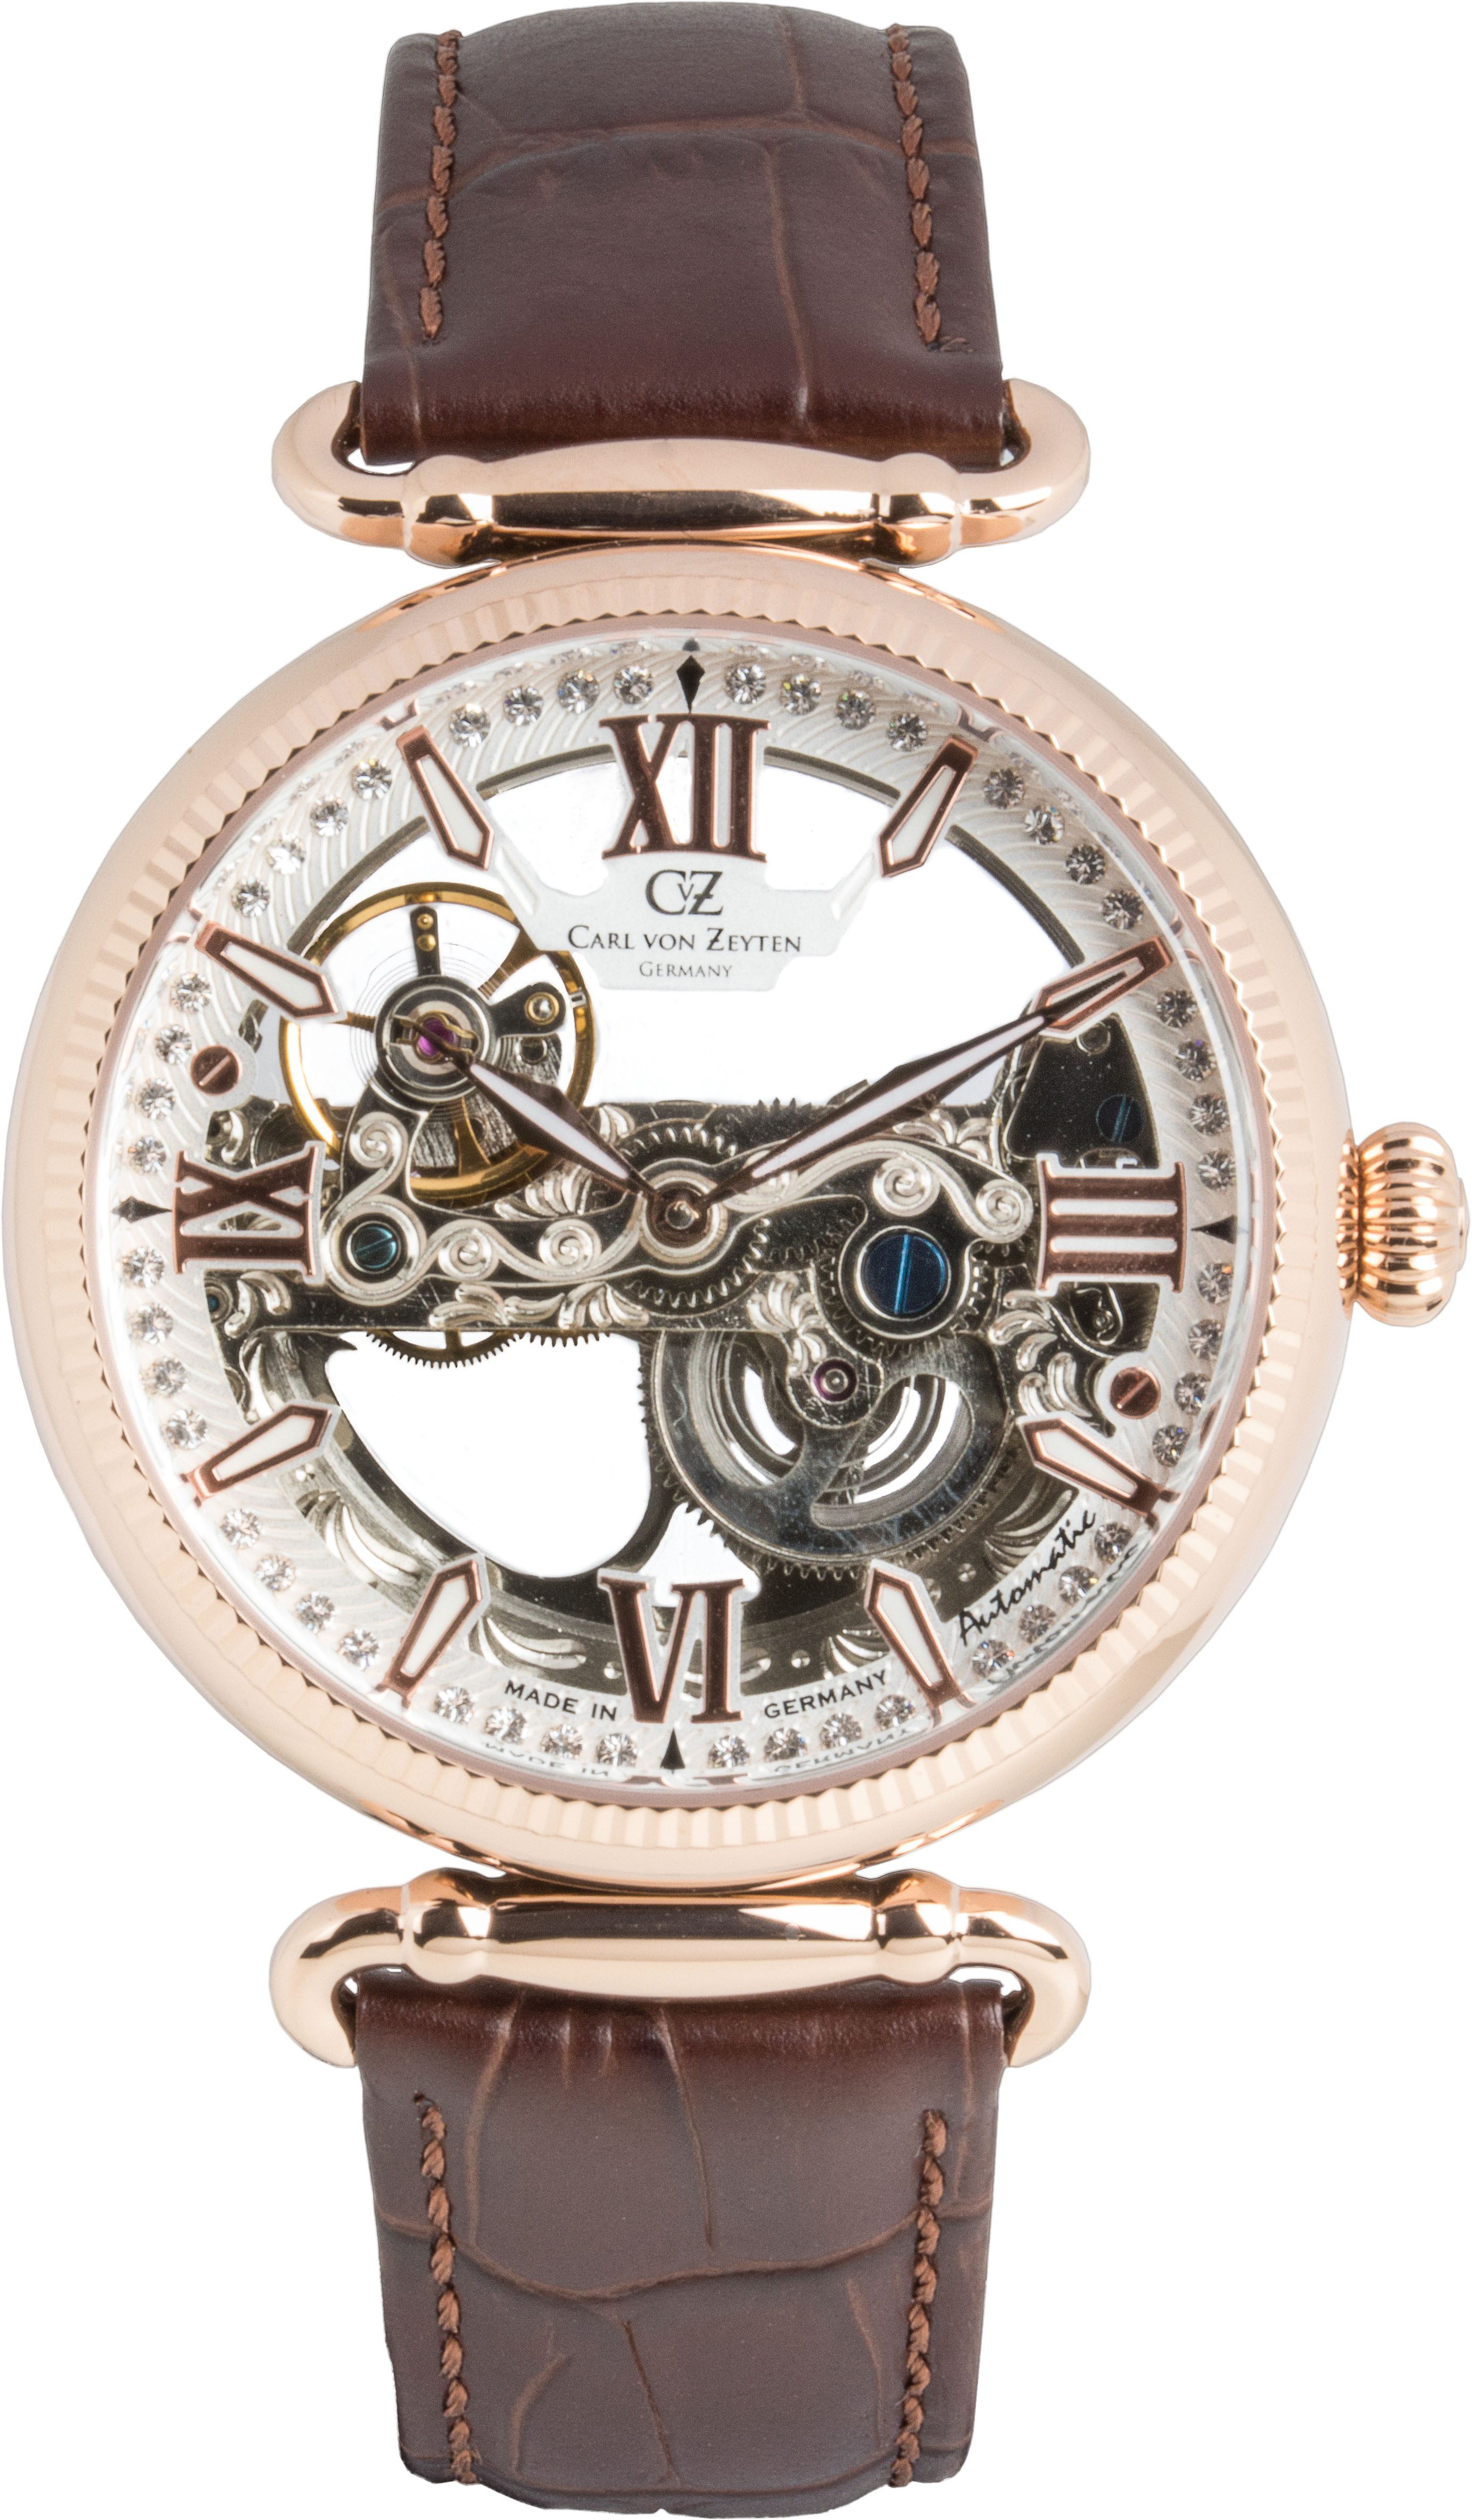 Carl von Zeyten Automatikuhr Häusern, Armbanduhr, mechanische Uhr, Damenuhr, Made in Germany